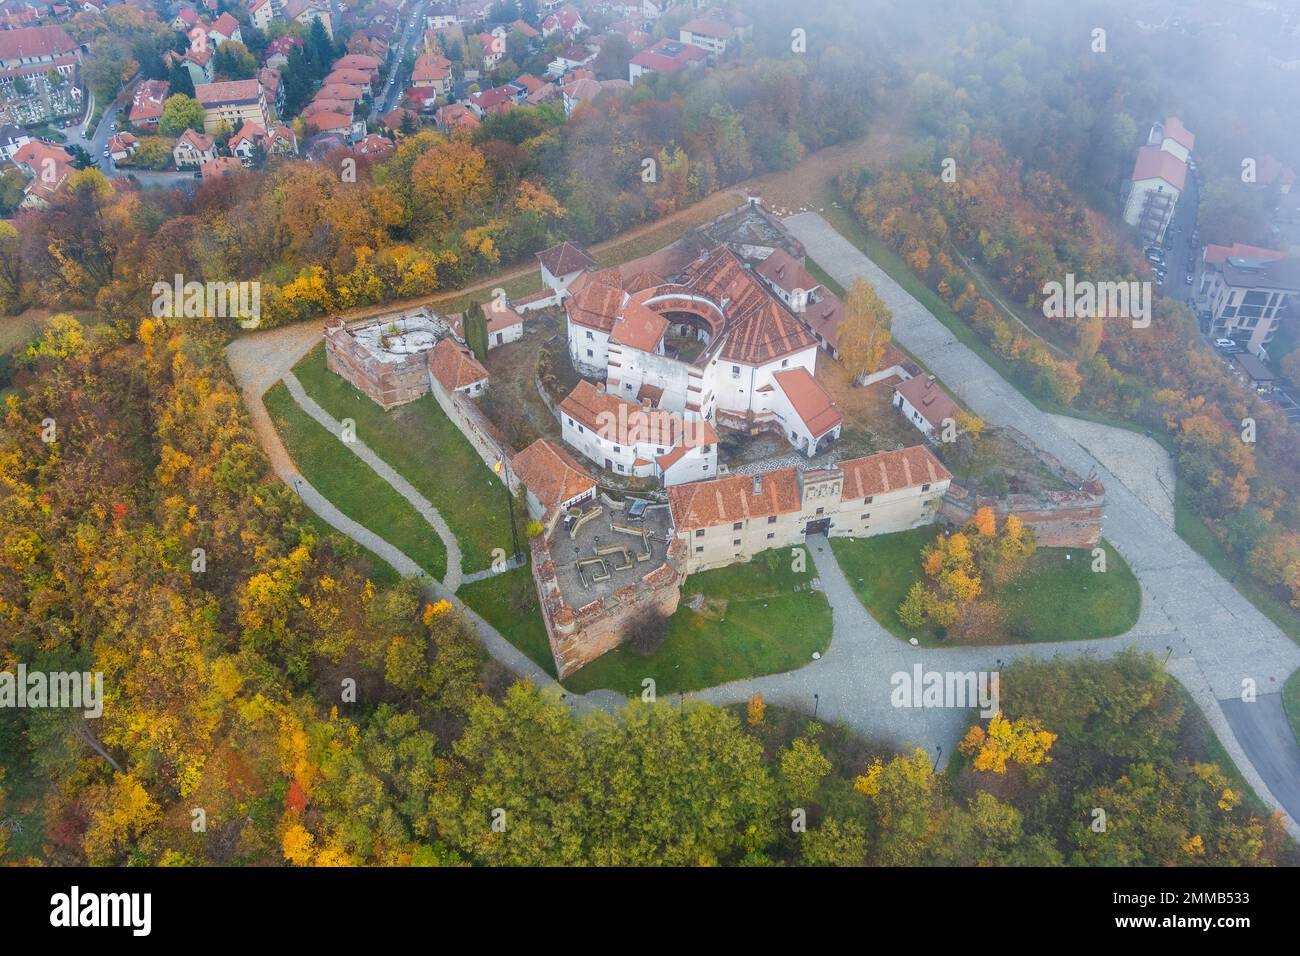 Historical citadel of Brasov on Straja hill Stock Photo